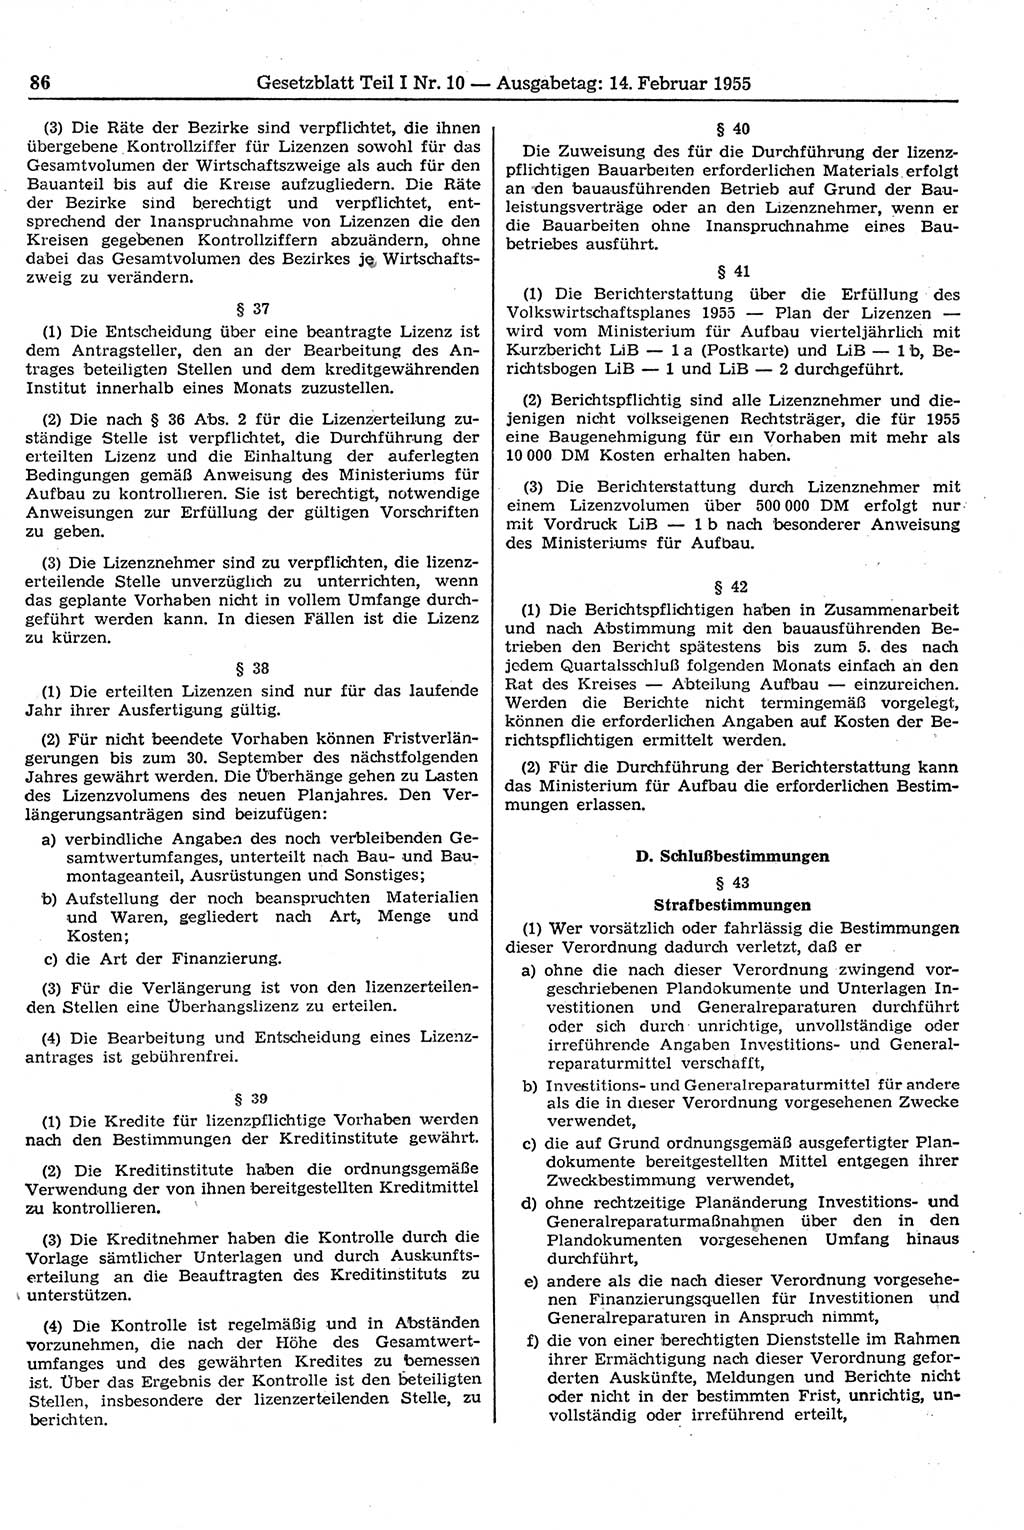 Gesetzblatt (GBl.) der Deutschen Demokratischen Republik (DDR) Teil Ⅰ 1955, Seite 86 (GBl. DDR Ⅰ 1955, S. 86)